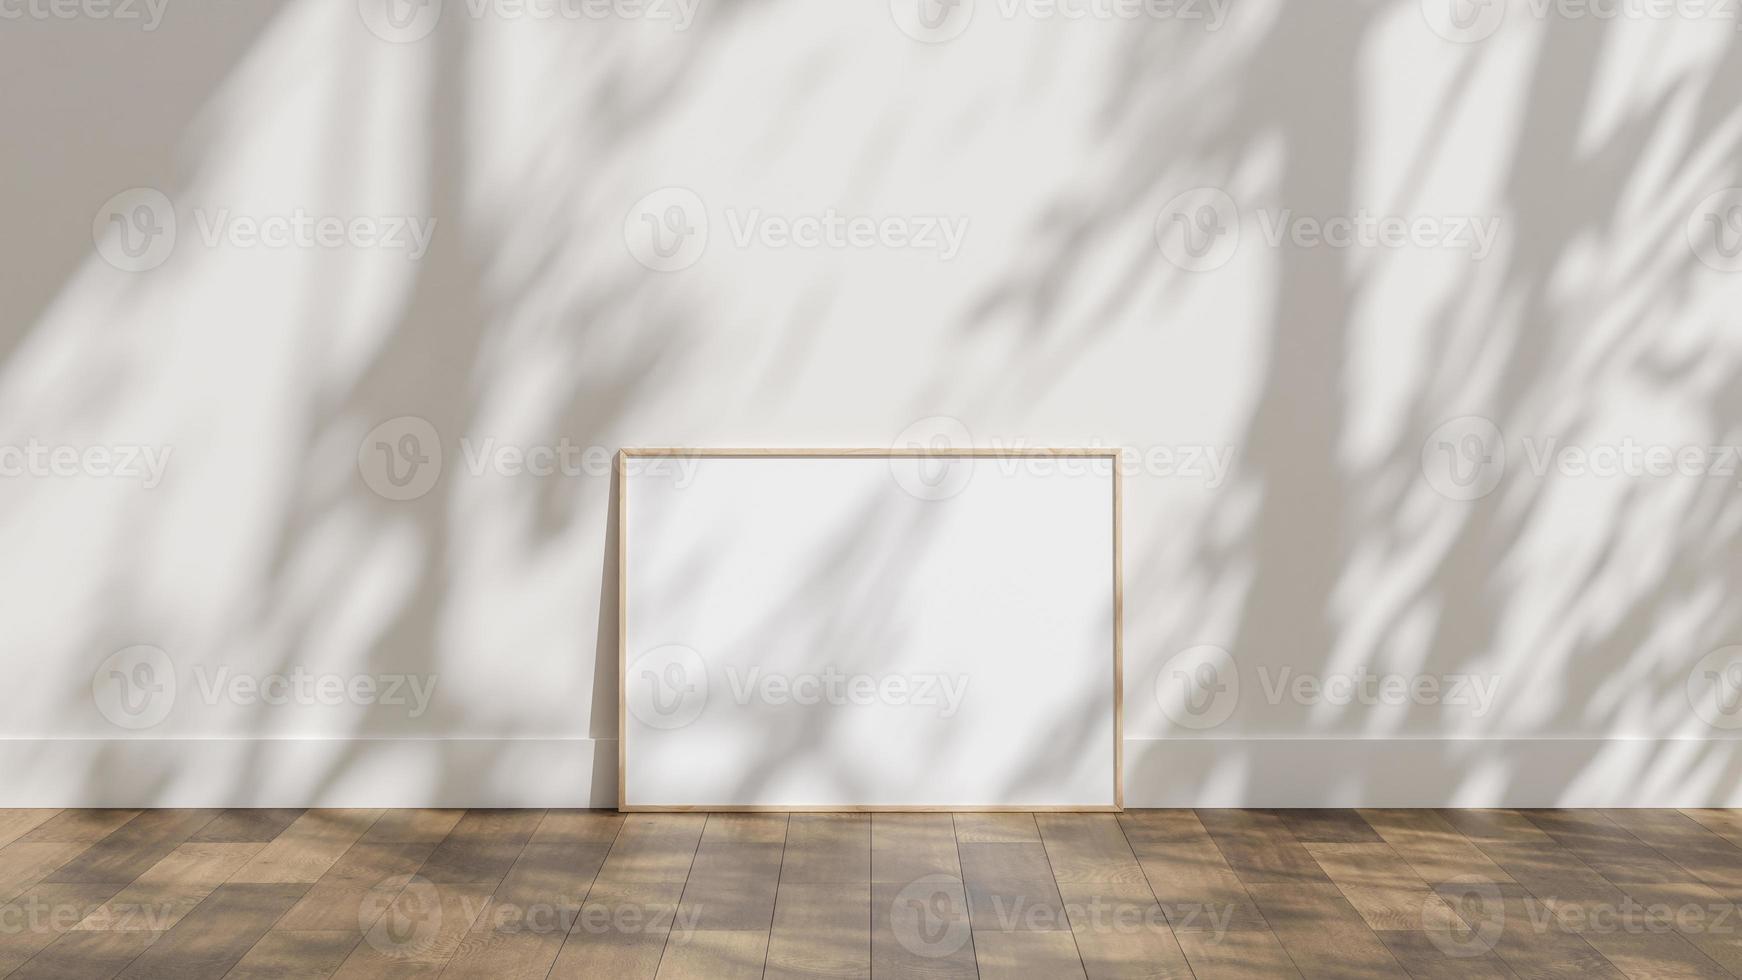 rahmenplakatmodell auf holzboden mit weißer wand und sonnenlichtschattenüberlagerung foto